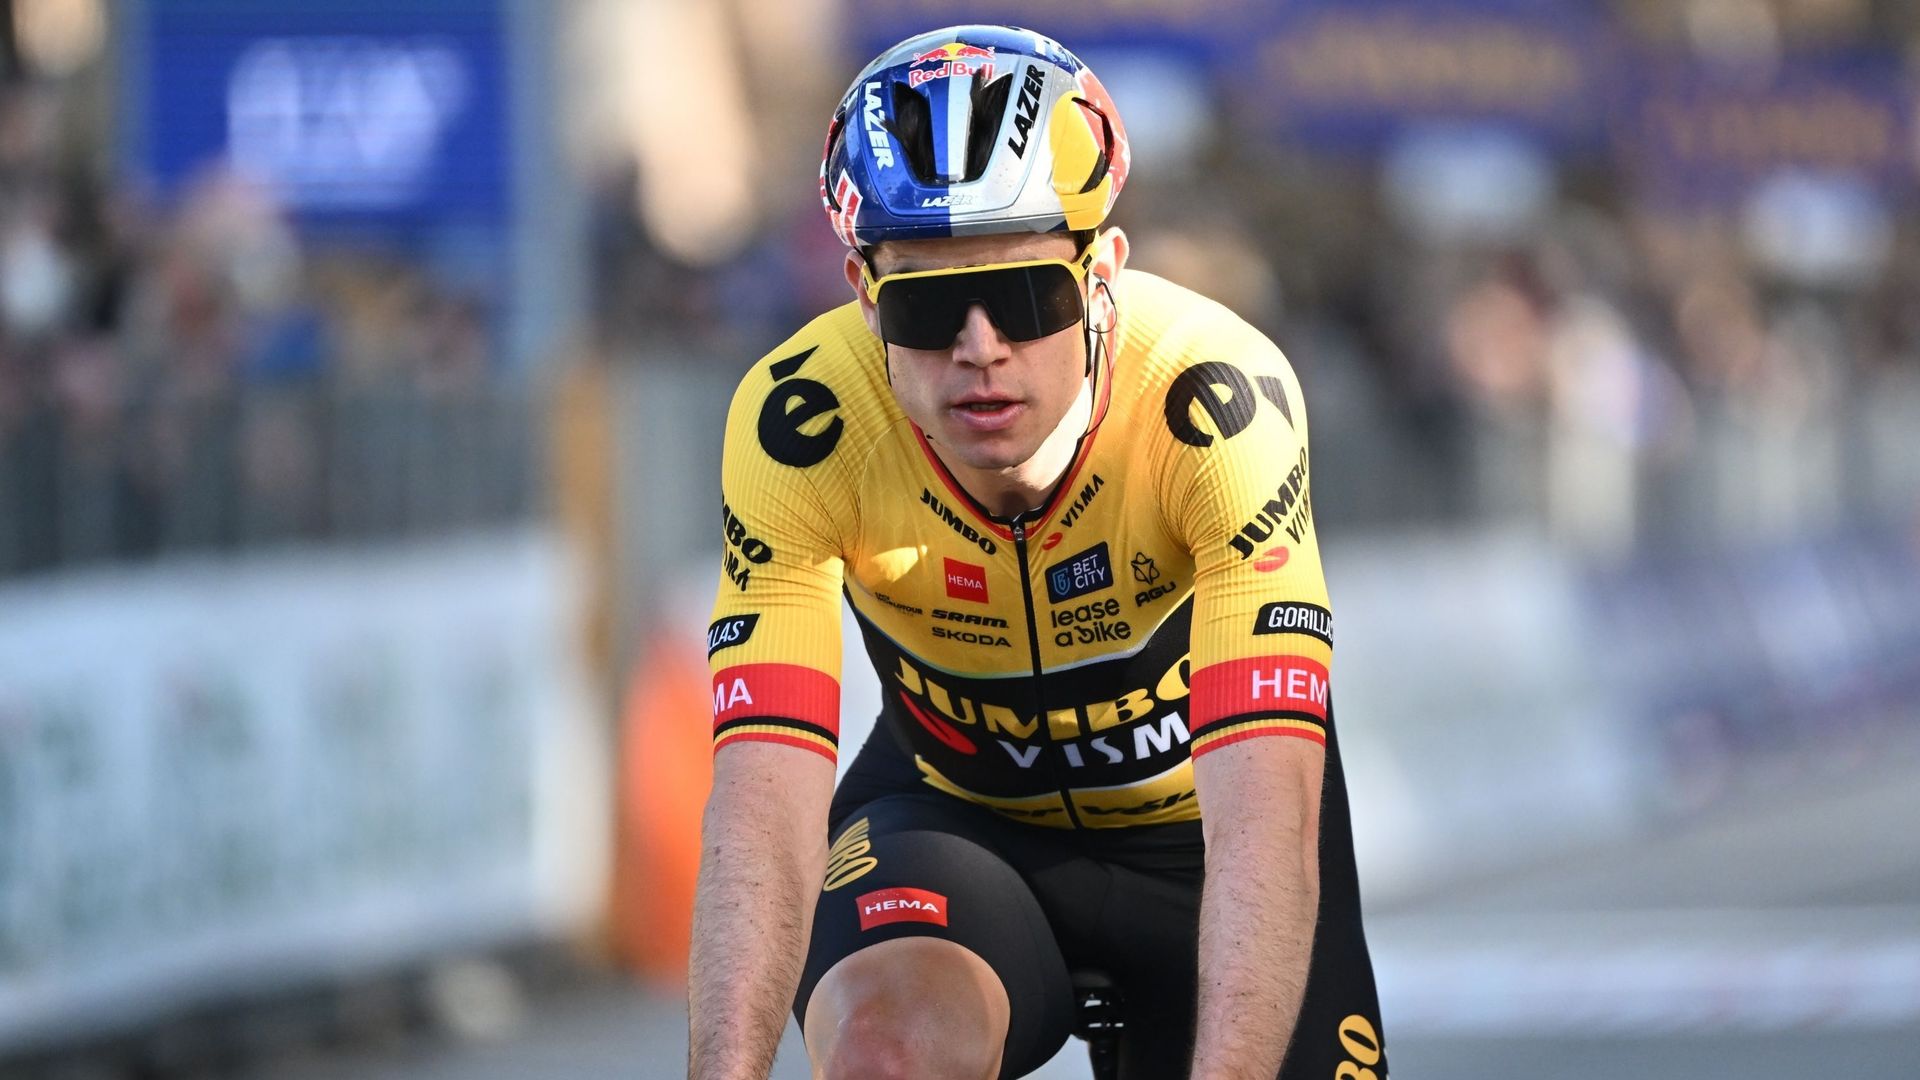 Wout van Aert lors de la 2e étape de Tirreno-Adriatico.